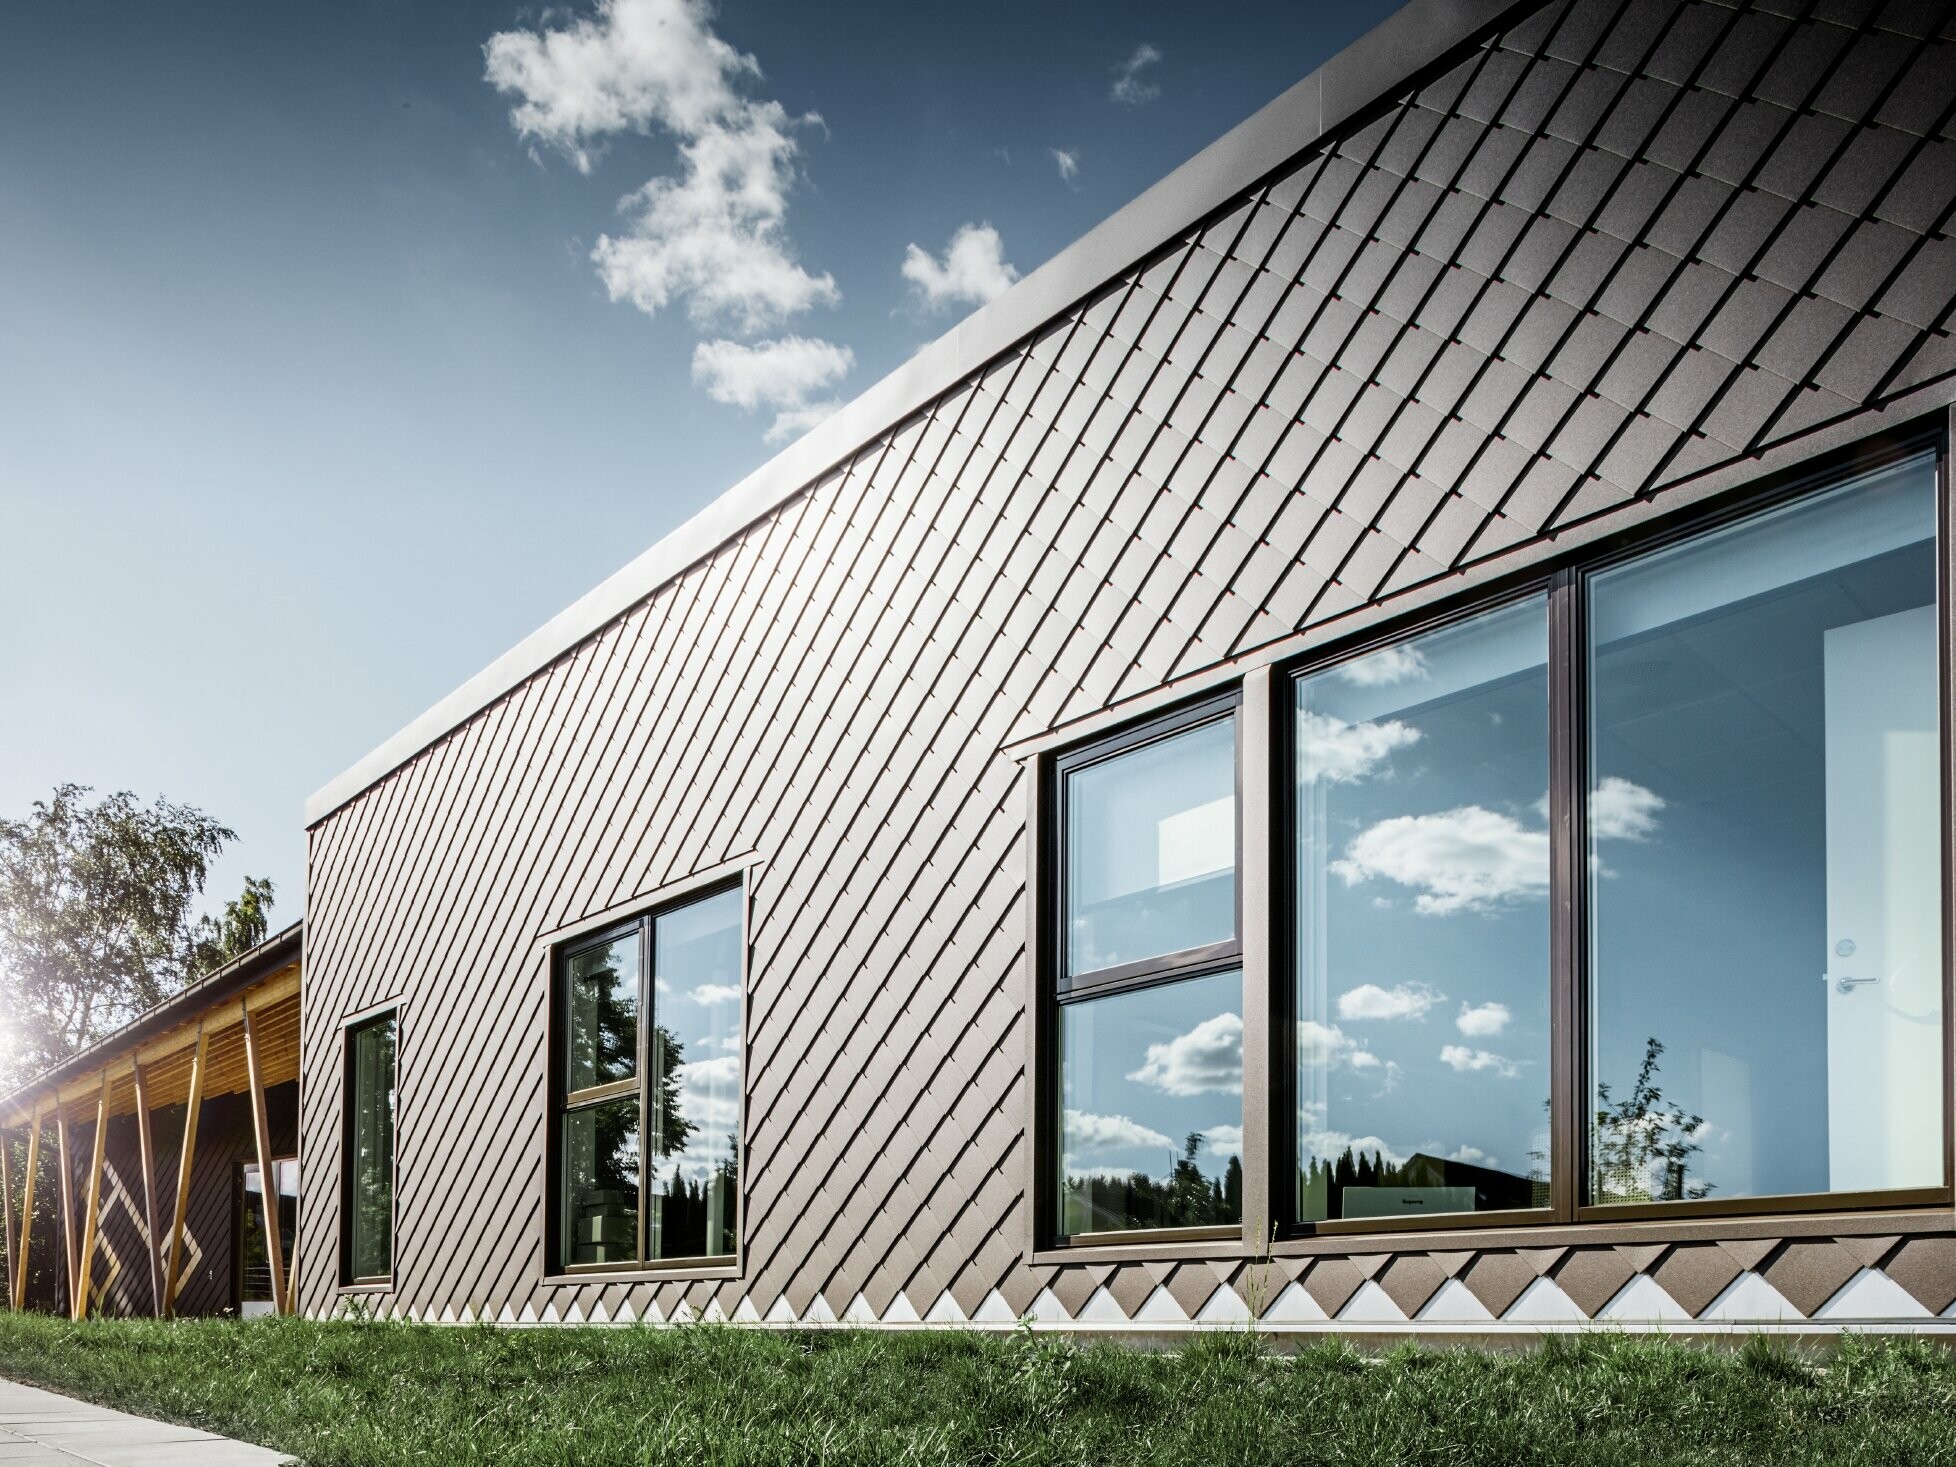 Ezen a stockholmi óvodáról készült fotón az új homlokzat látható nagy ablakokkal és lapos tetővel. A külső homlokzatot 20x20-as barna homlokzati rombusz borítja.